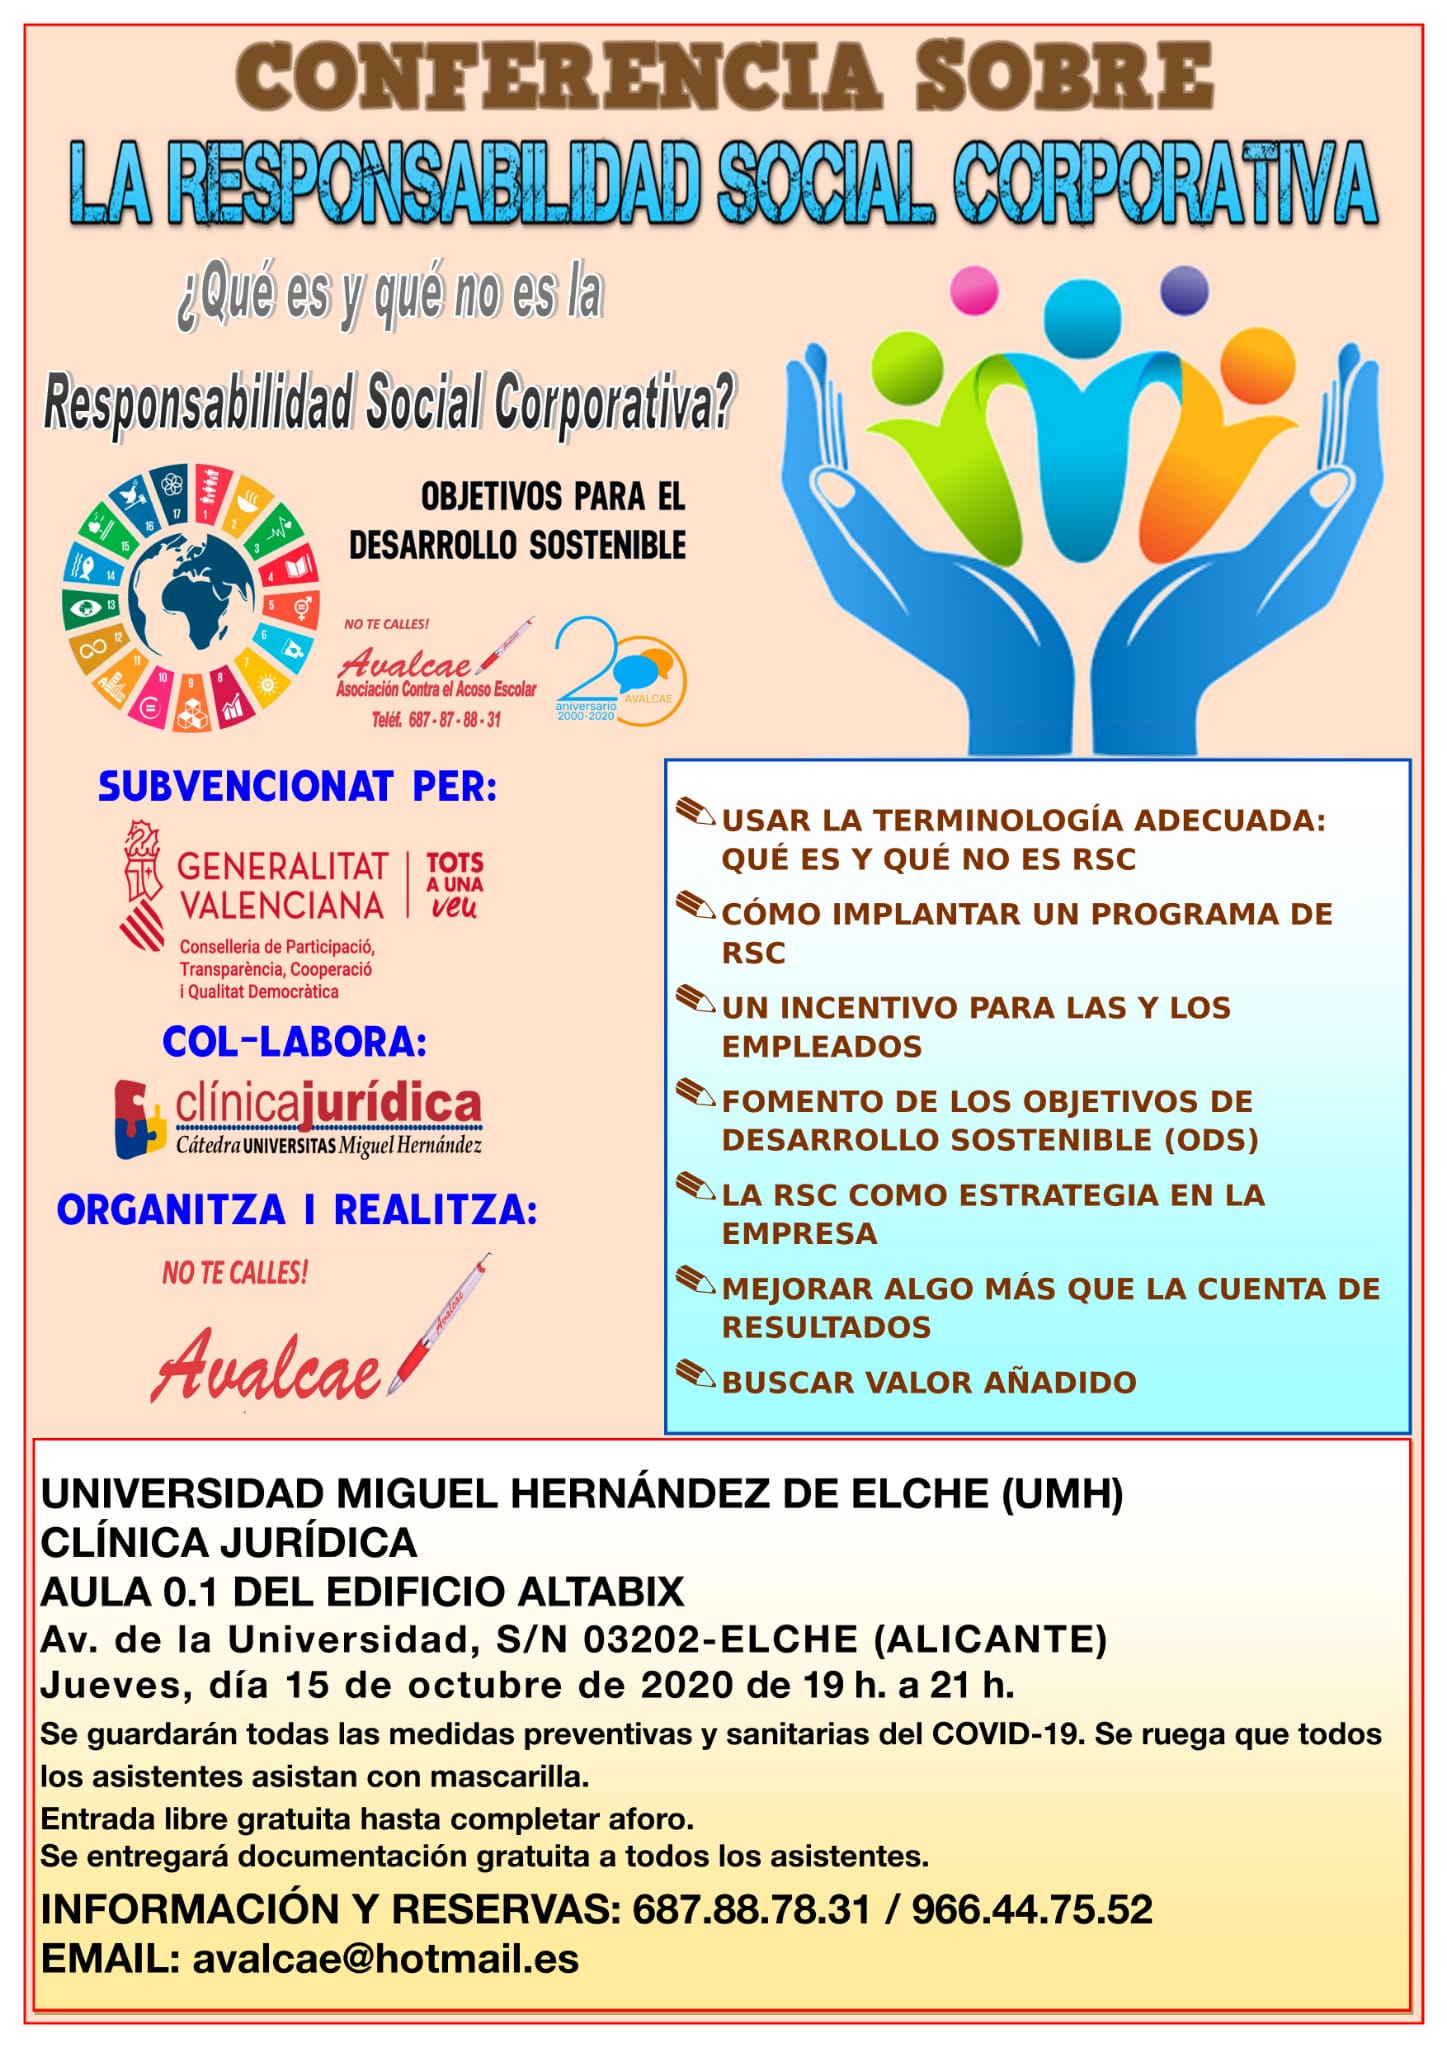 Conferencia sobre Responsabilidad Social Corporativa, jueves 15 octubre, 19:00 horas